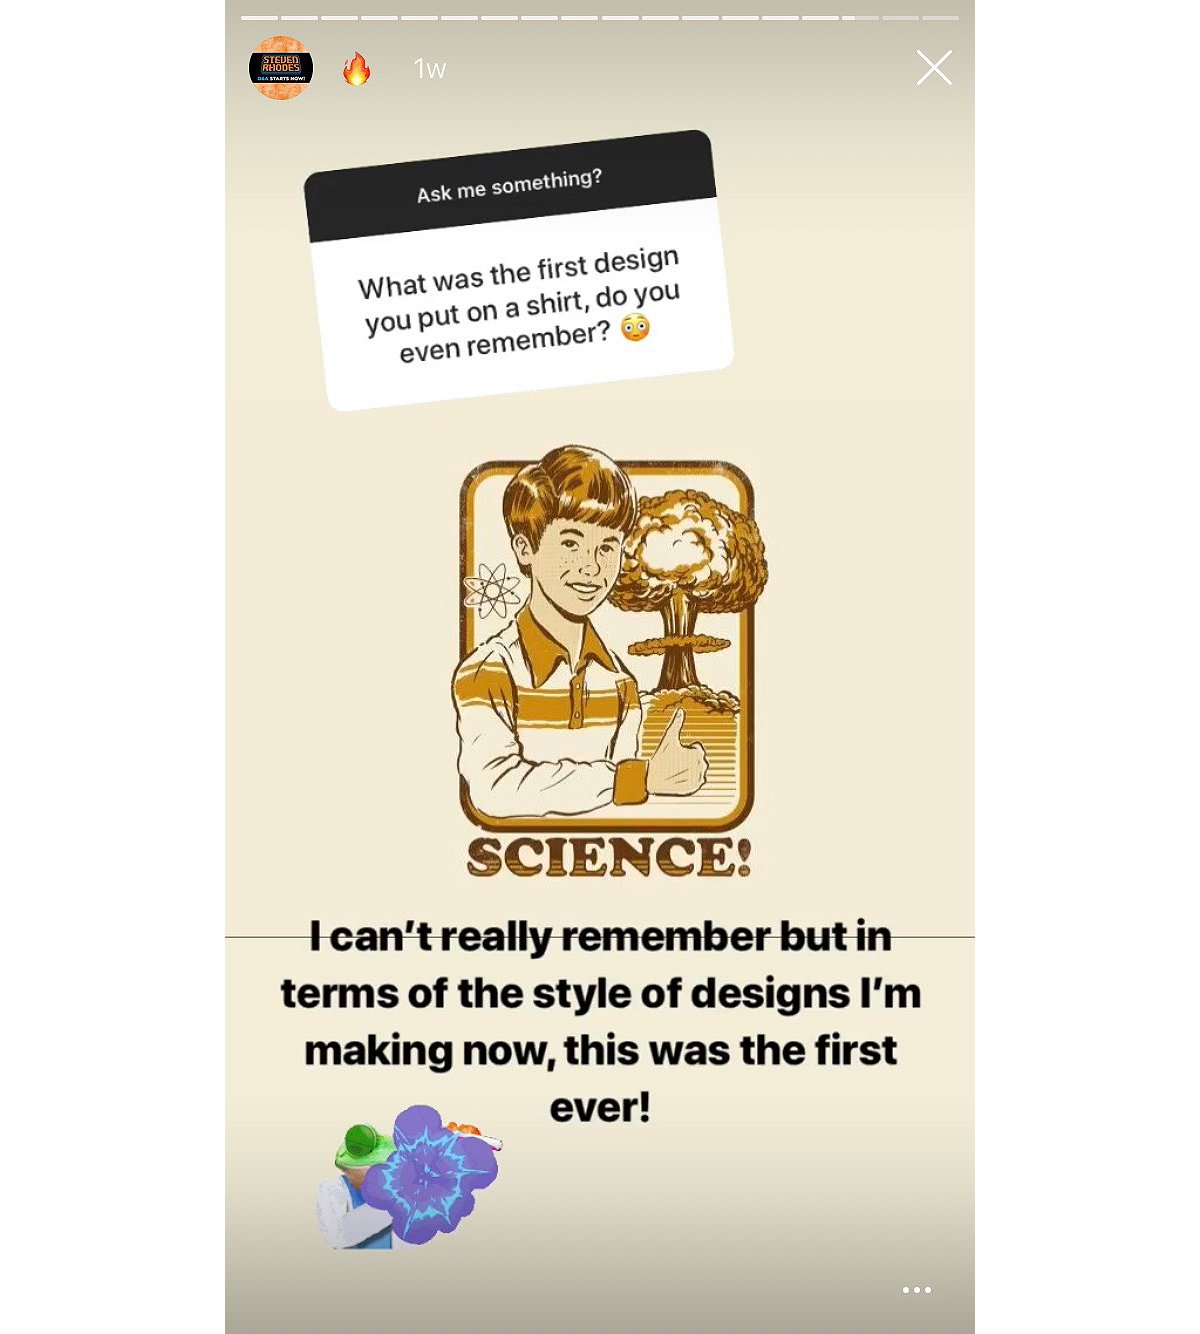 steven rhodes instagram interview science first design